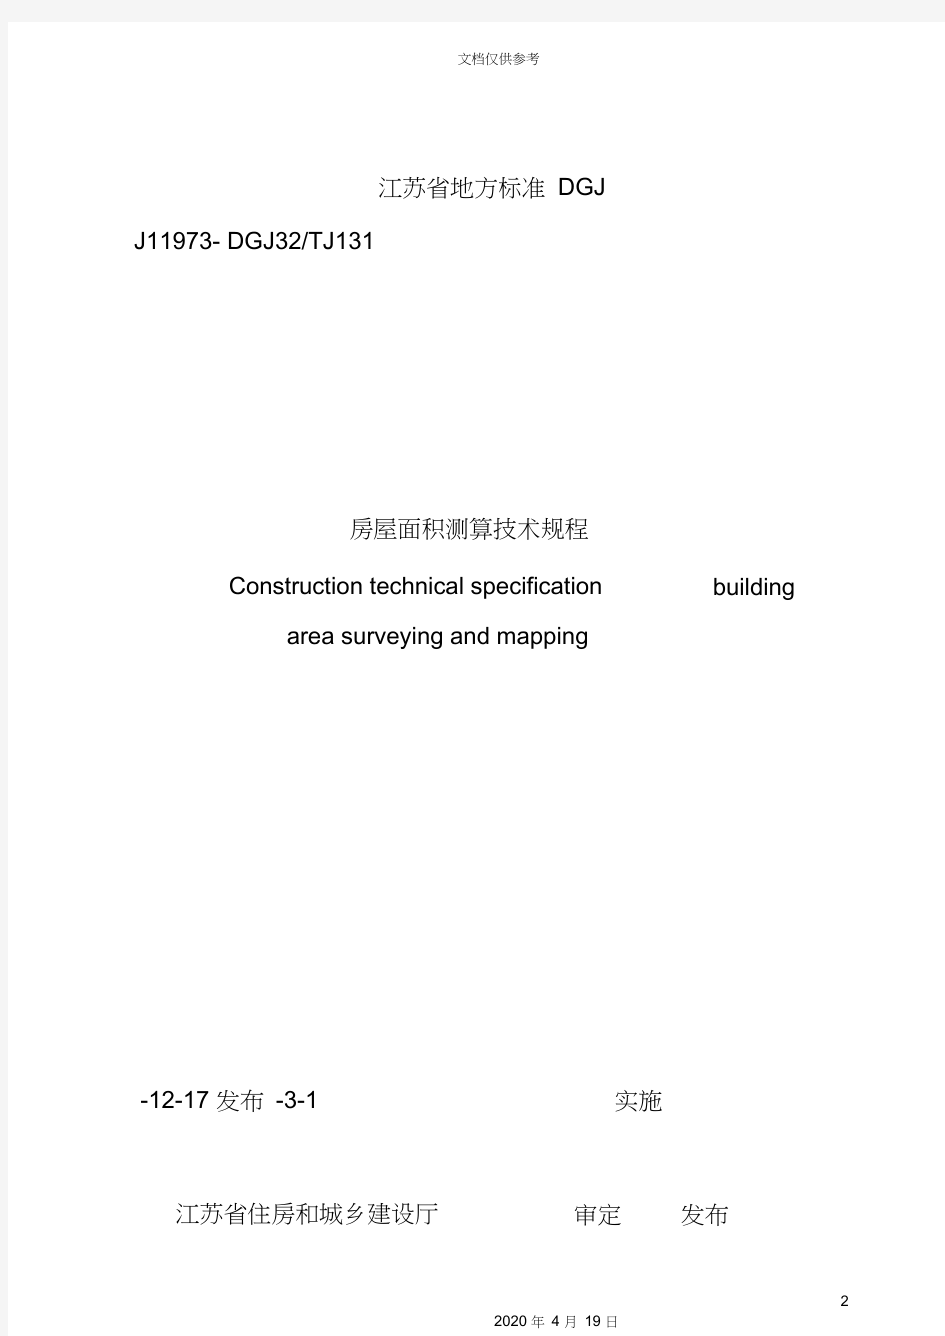 江苏省地方房屋面积测算技术规范标准